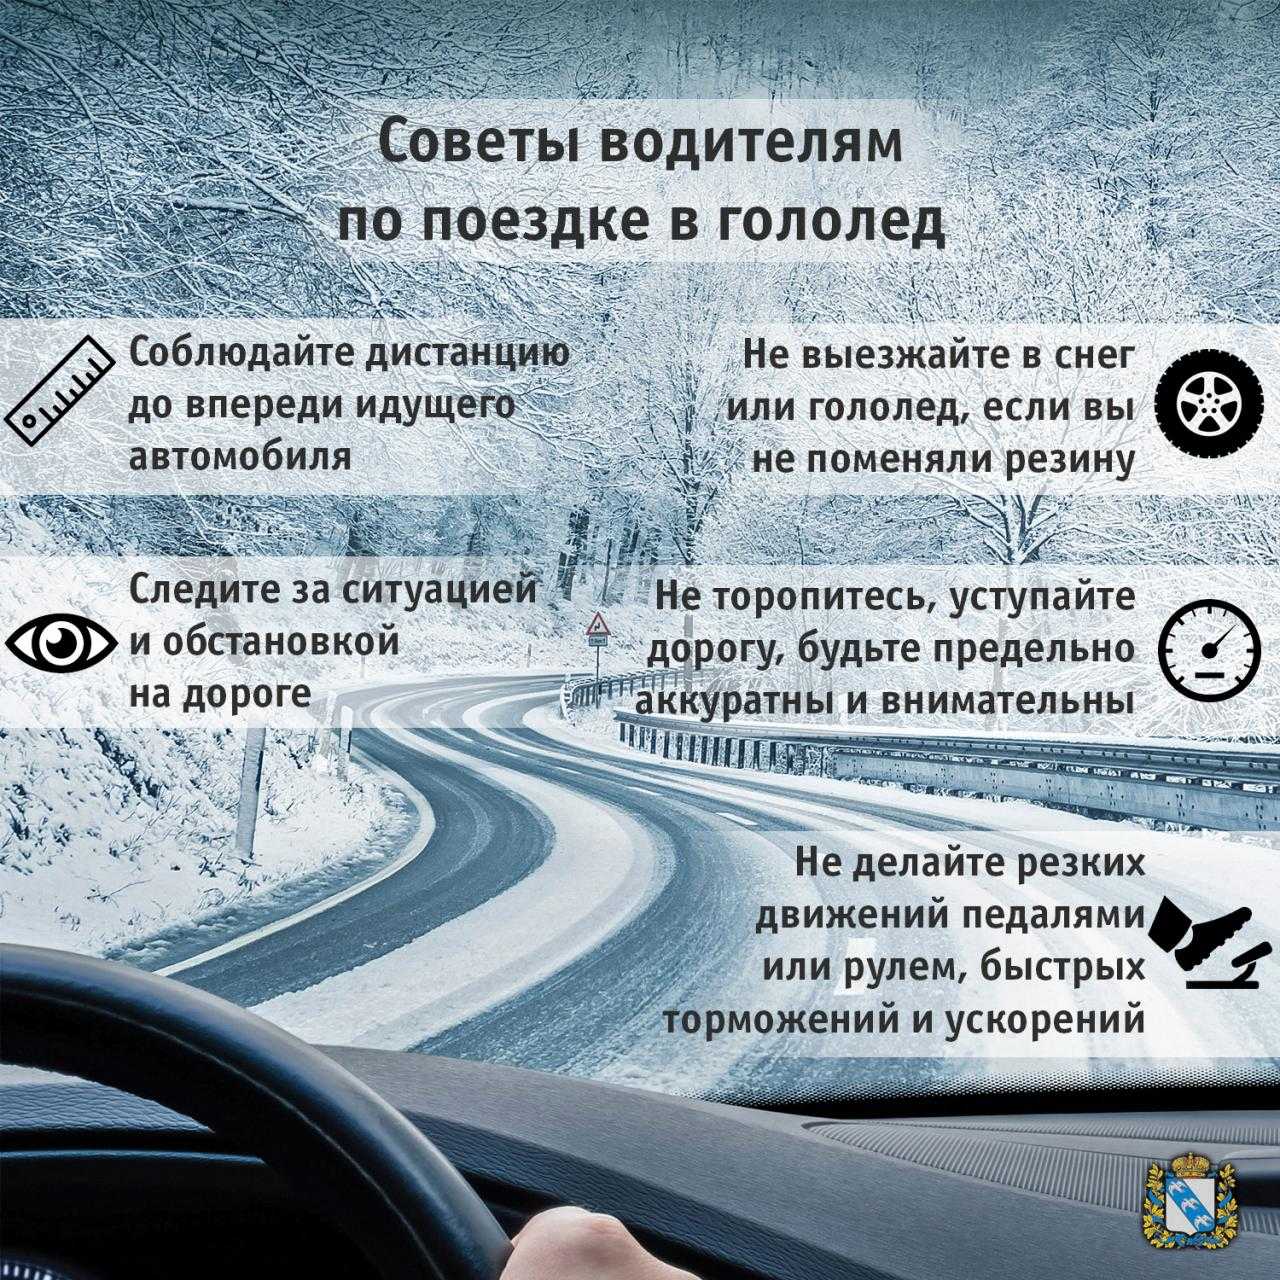 Правила вождения в сложных дорожных условиях